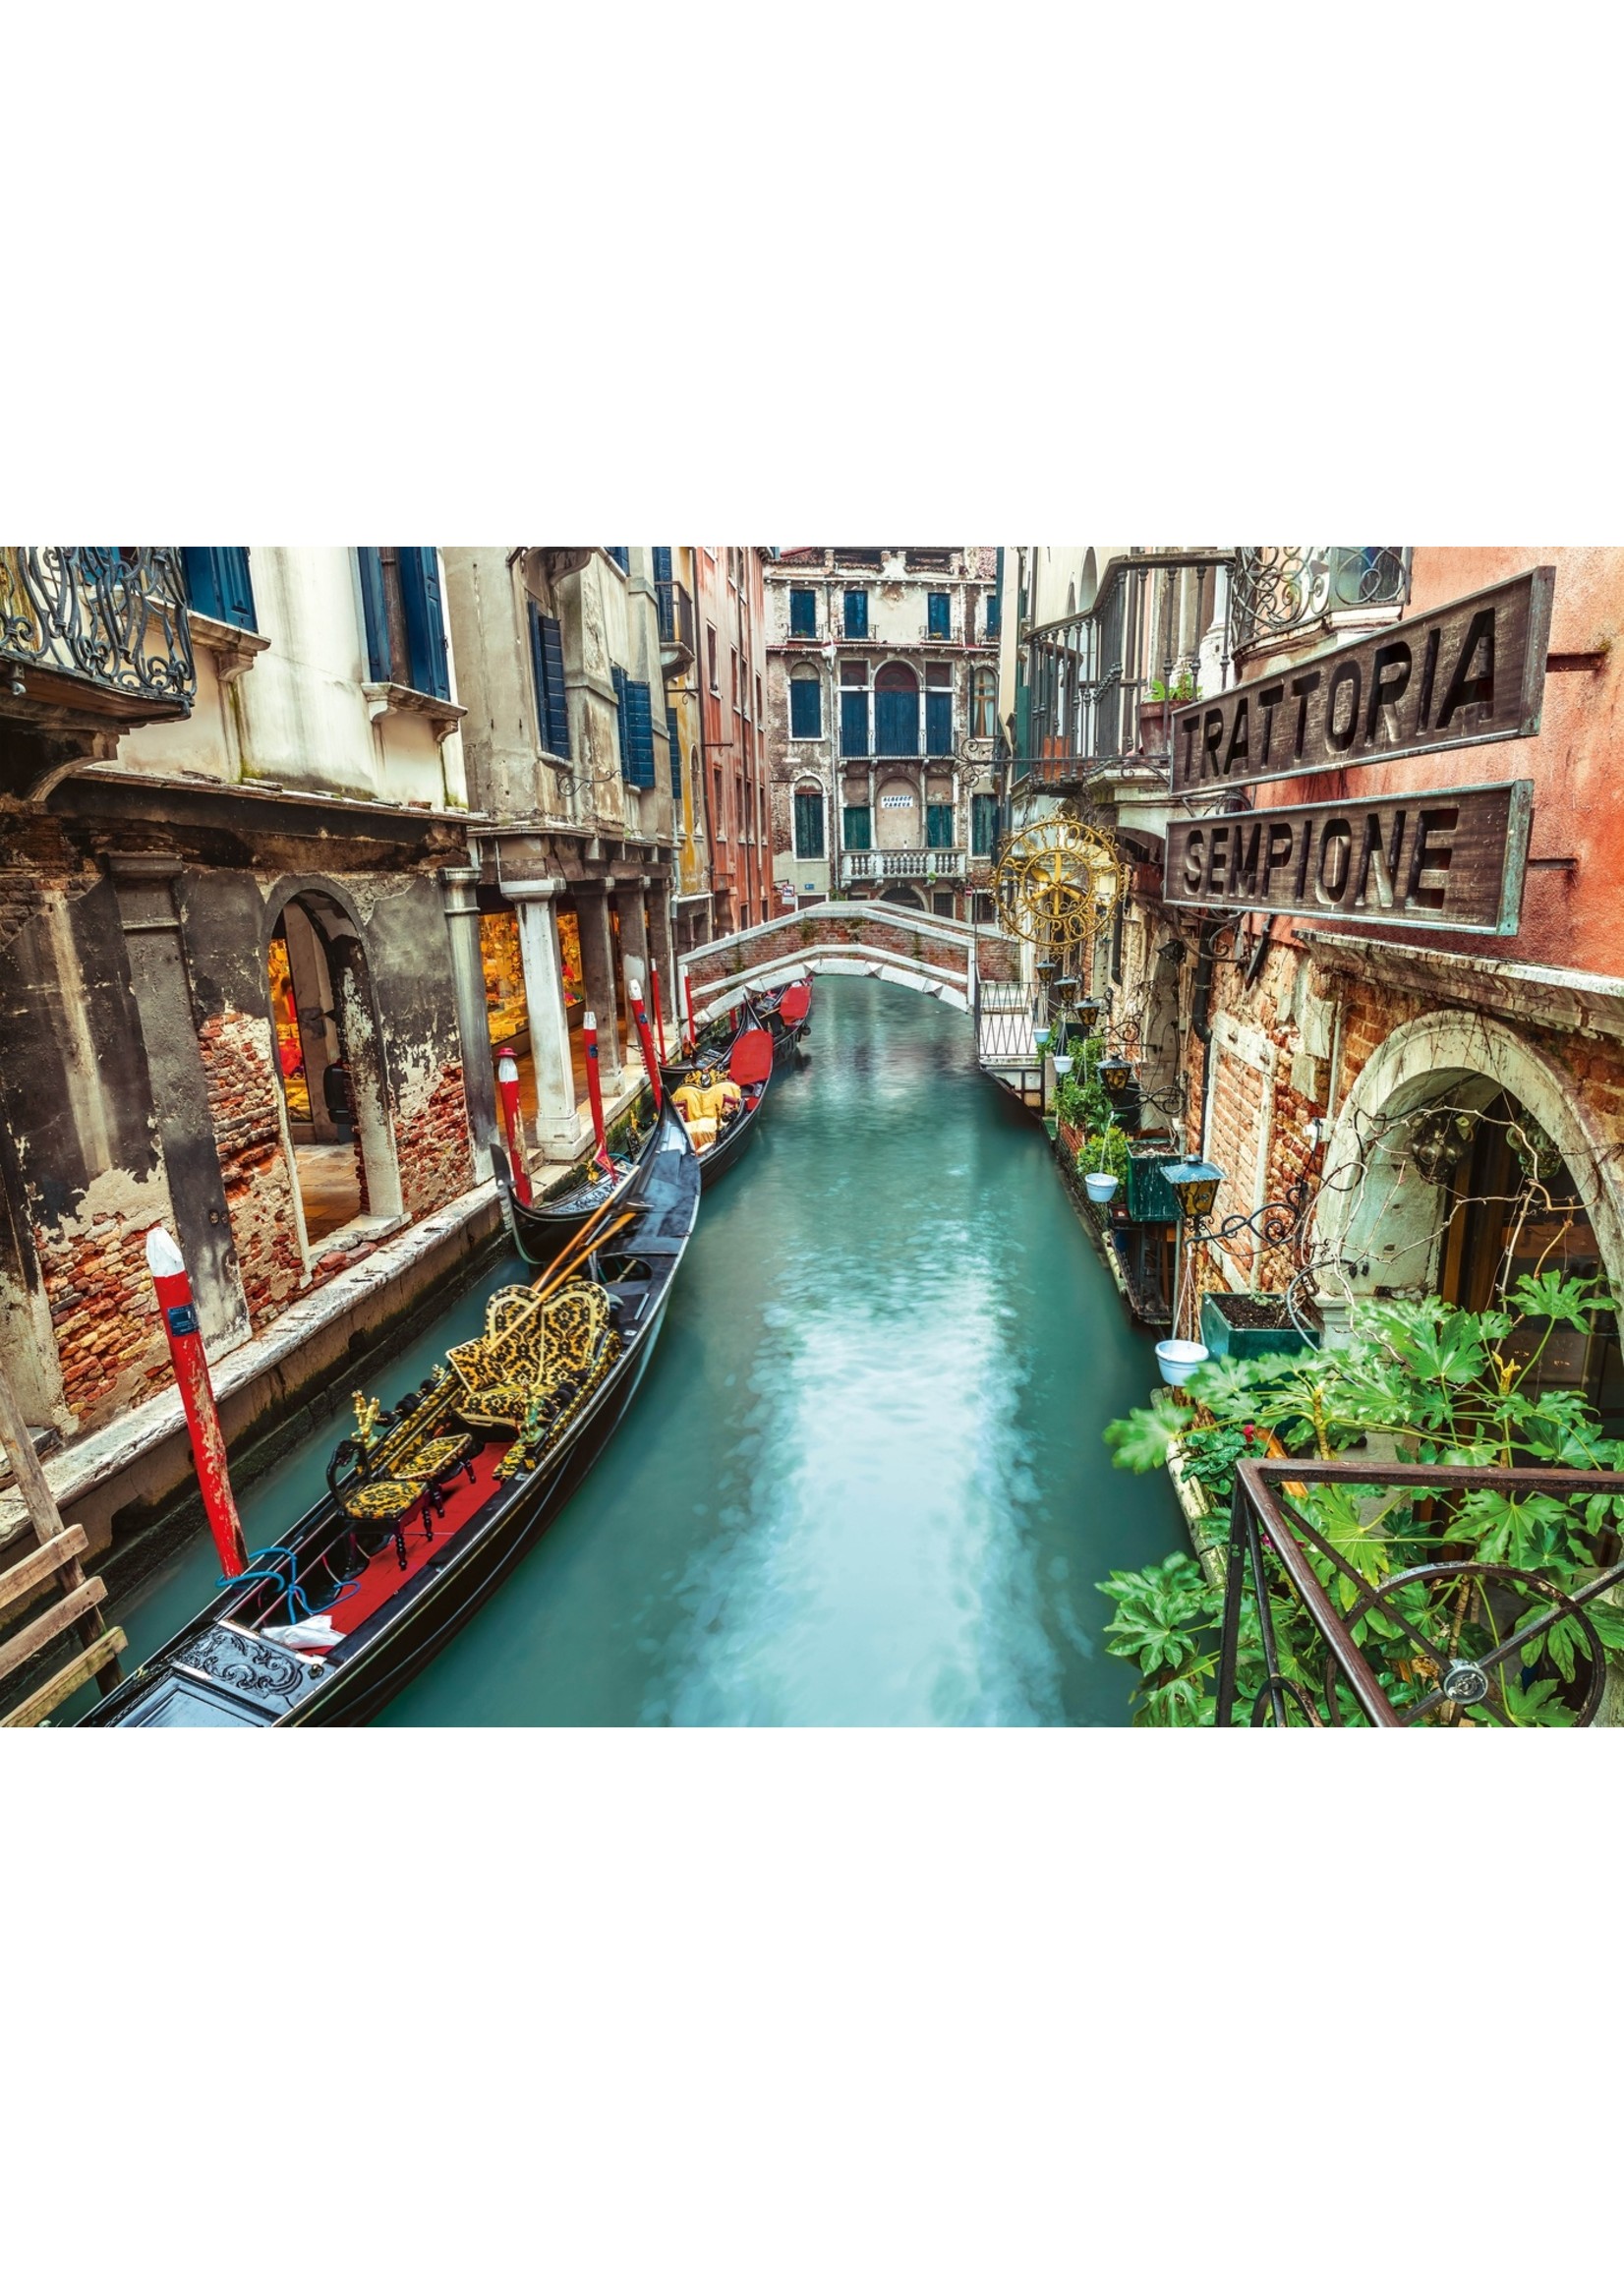 Clementoni Venice Canal - 1000 Piece Puzzle